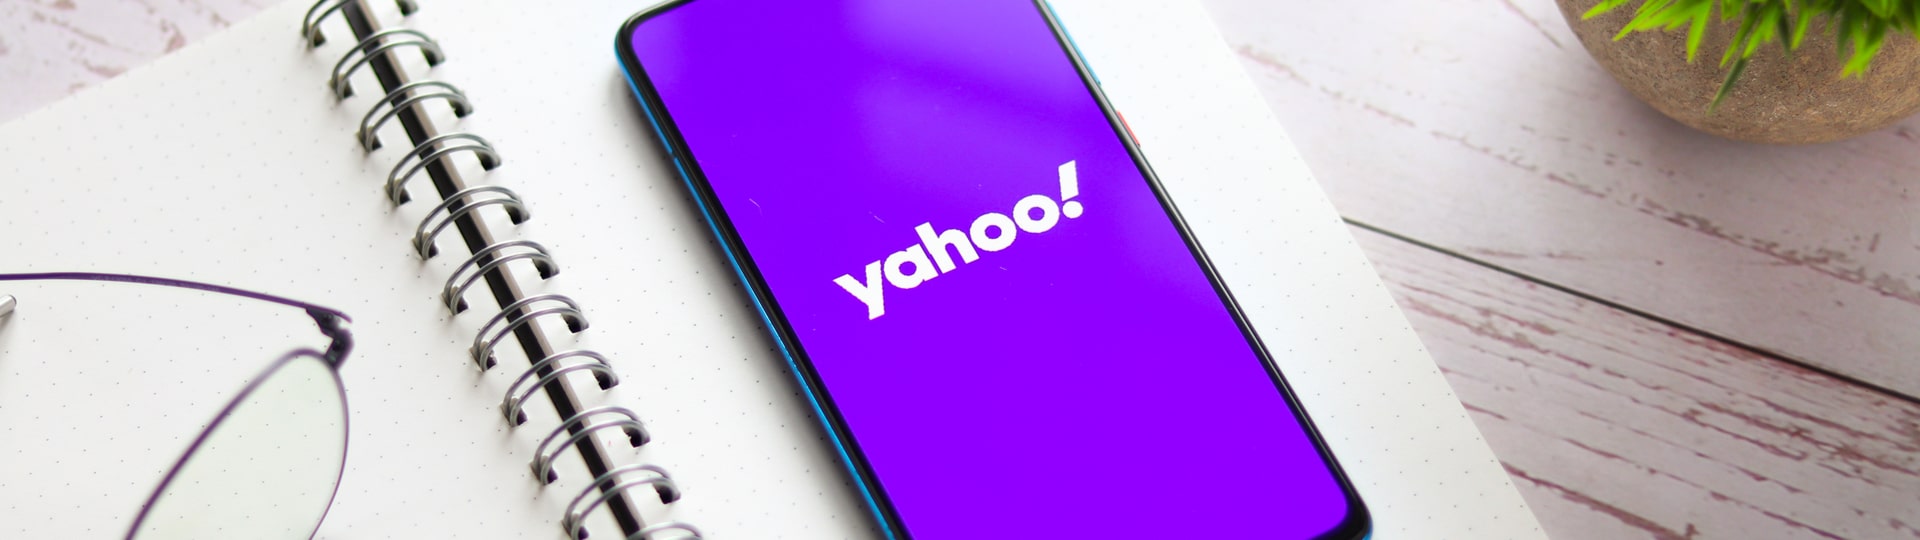 Internetová společnost Yahoo odchází z Číny